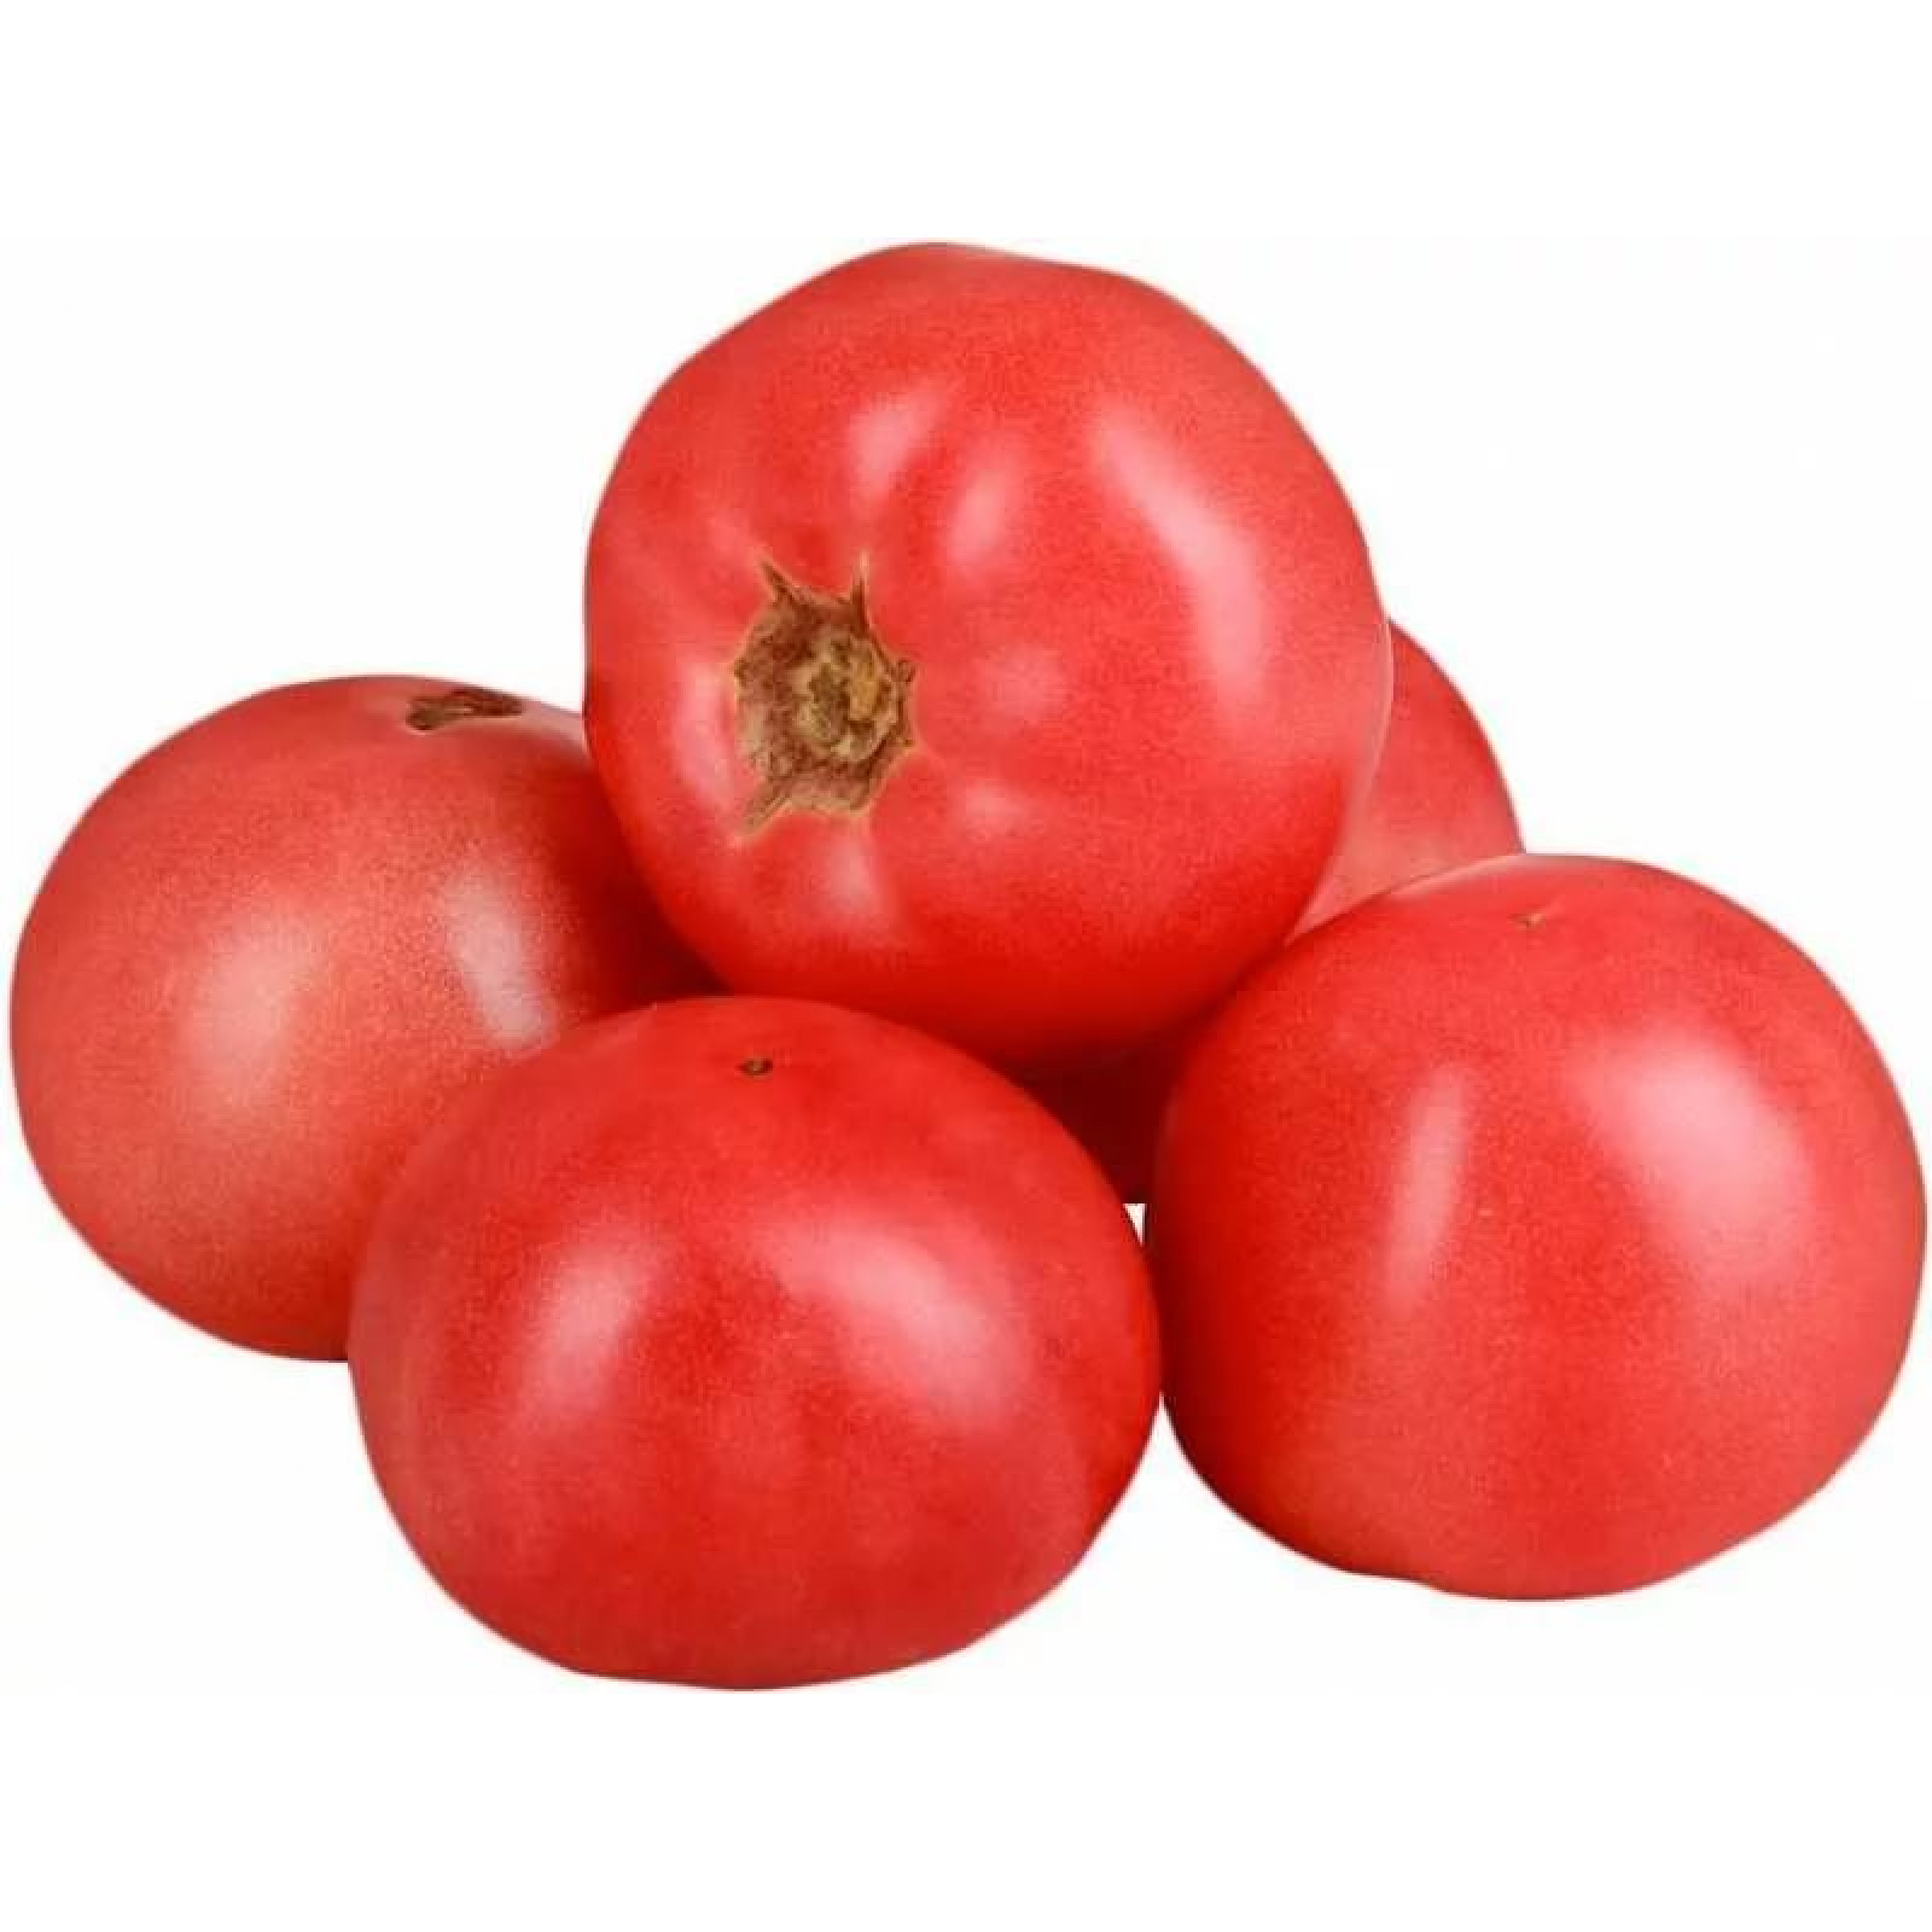 Розовые томаты весовые (средний вес: 600 г)